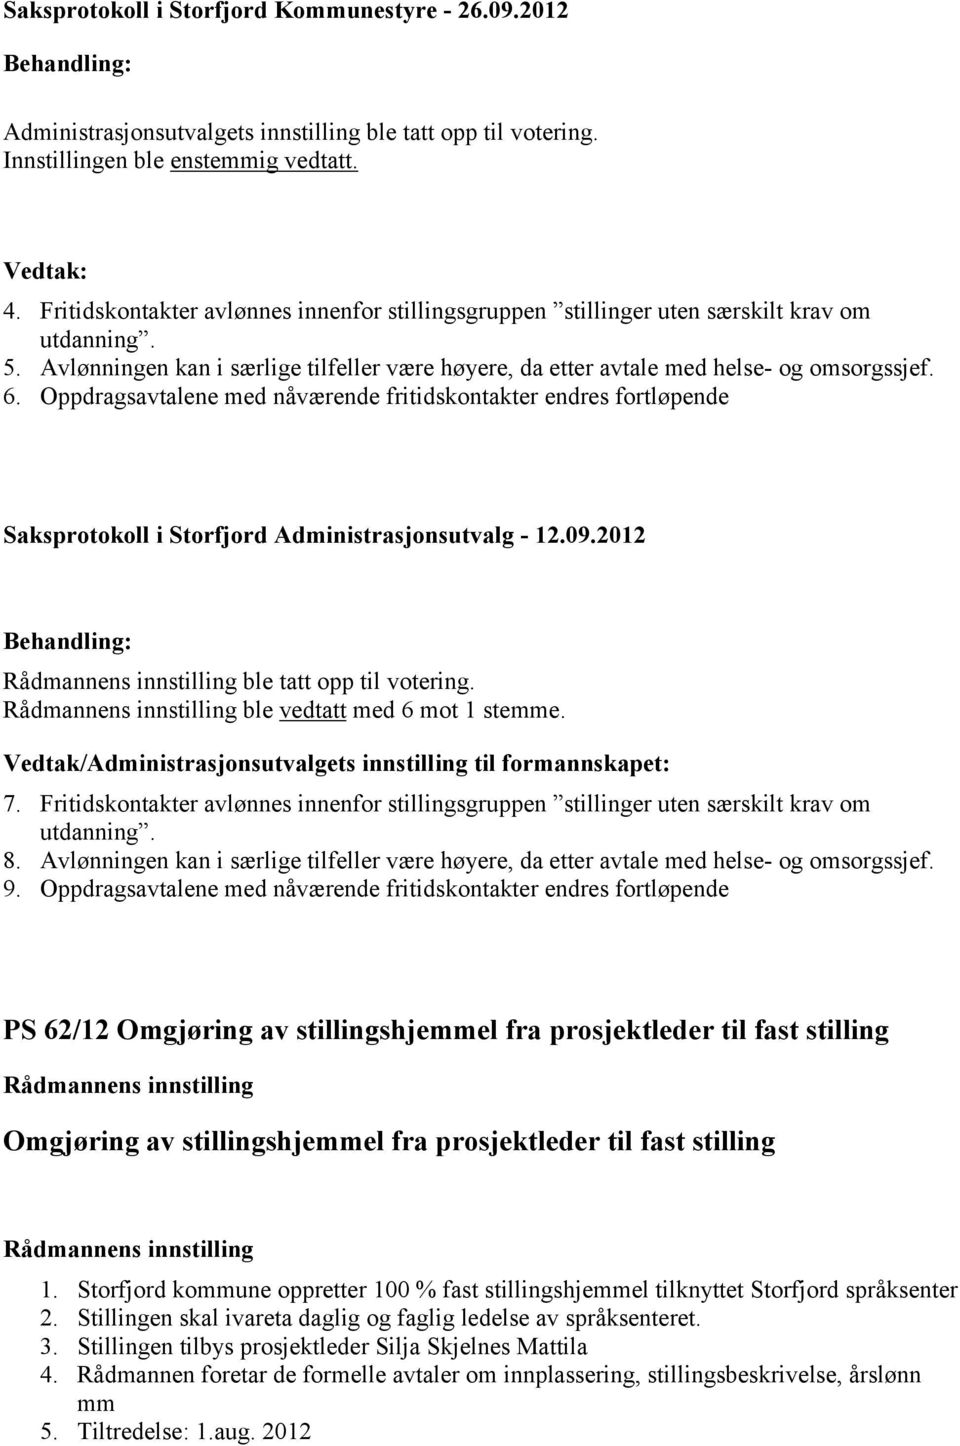 Oppdragsavtalene med nåværende fritidskontakter endres fortløpende Saksprotokoll i Storfjord Administrasjonsutvalg 12.09.2012 ble tatt opp til votering. ble vedtatt med 6 mot 1 stemme.